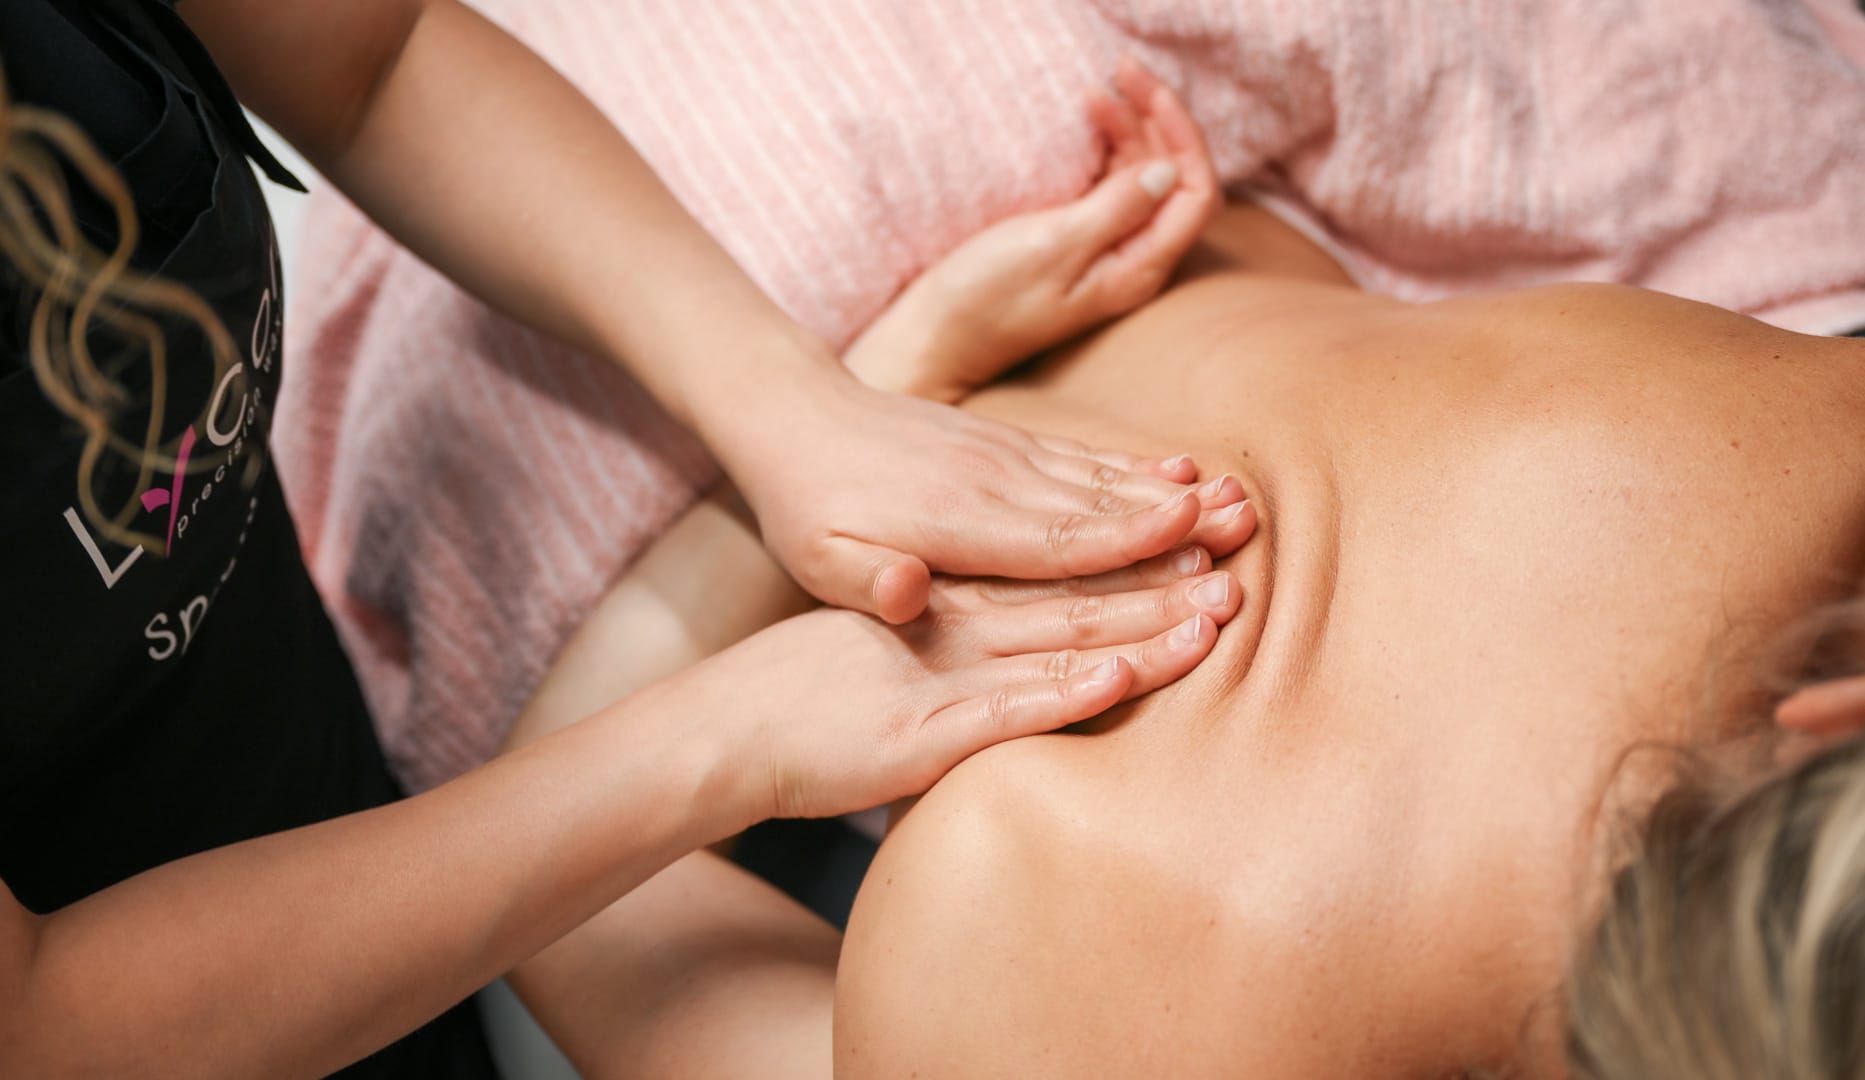 Angelina massage - wellness deals